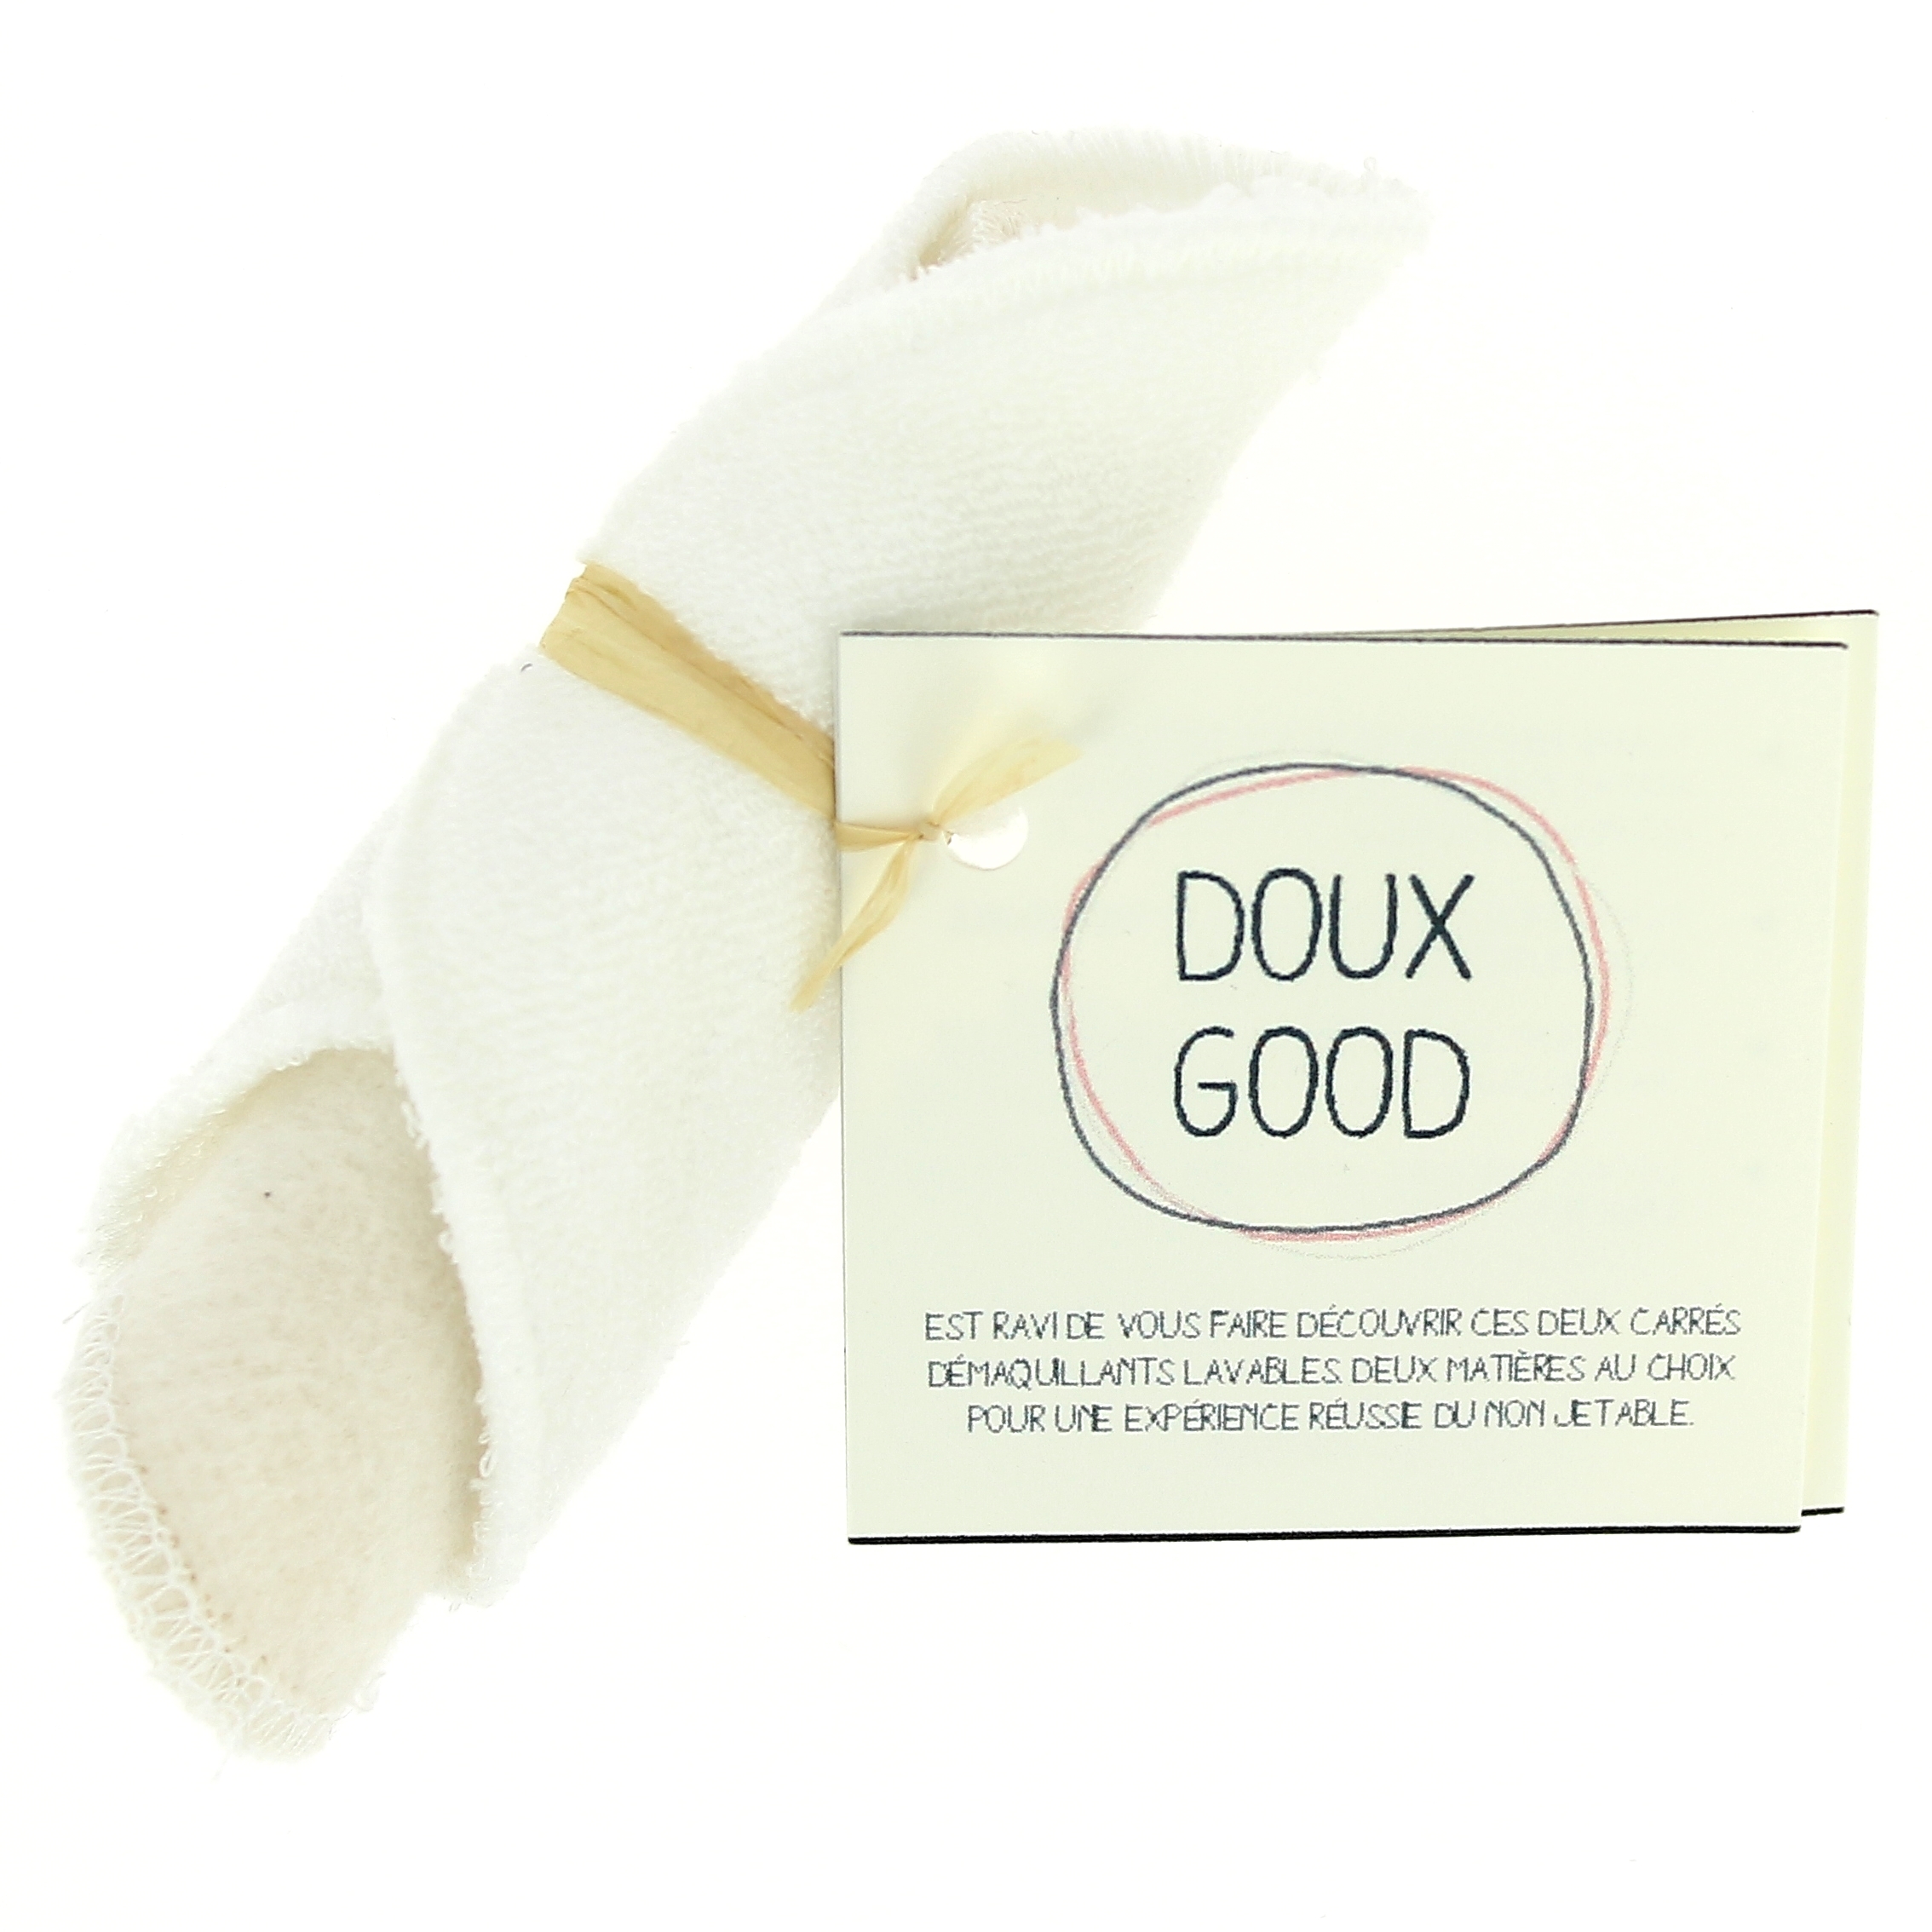 Doux Good - Duo découverte de carré démaquillant lavable coton bio biface et Eucalyptus